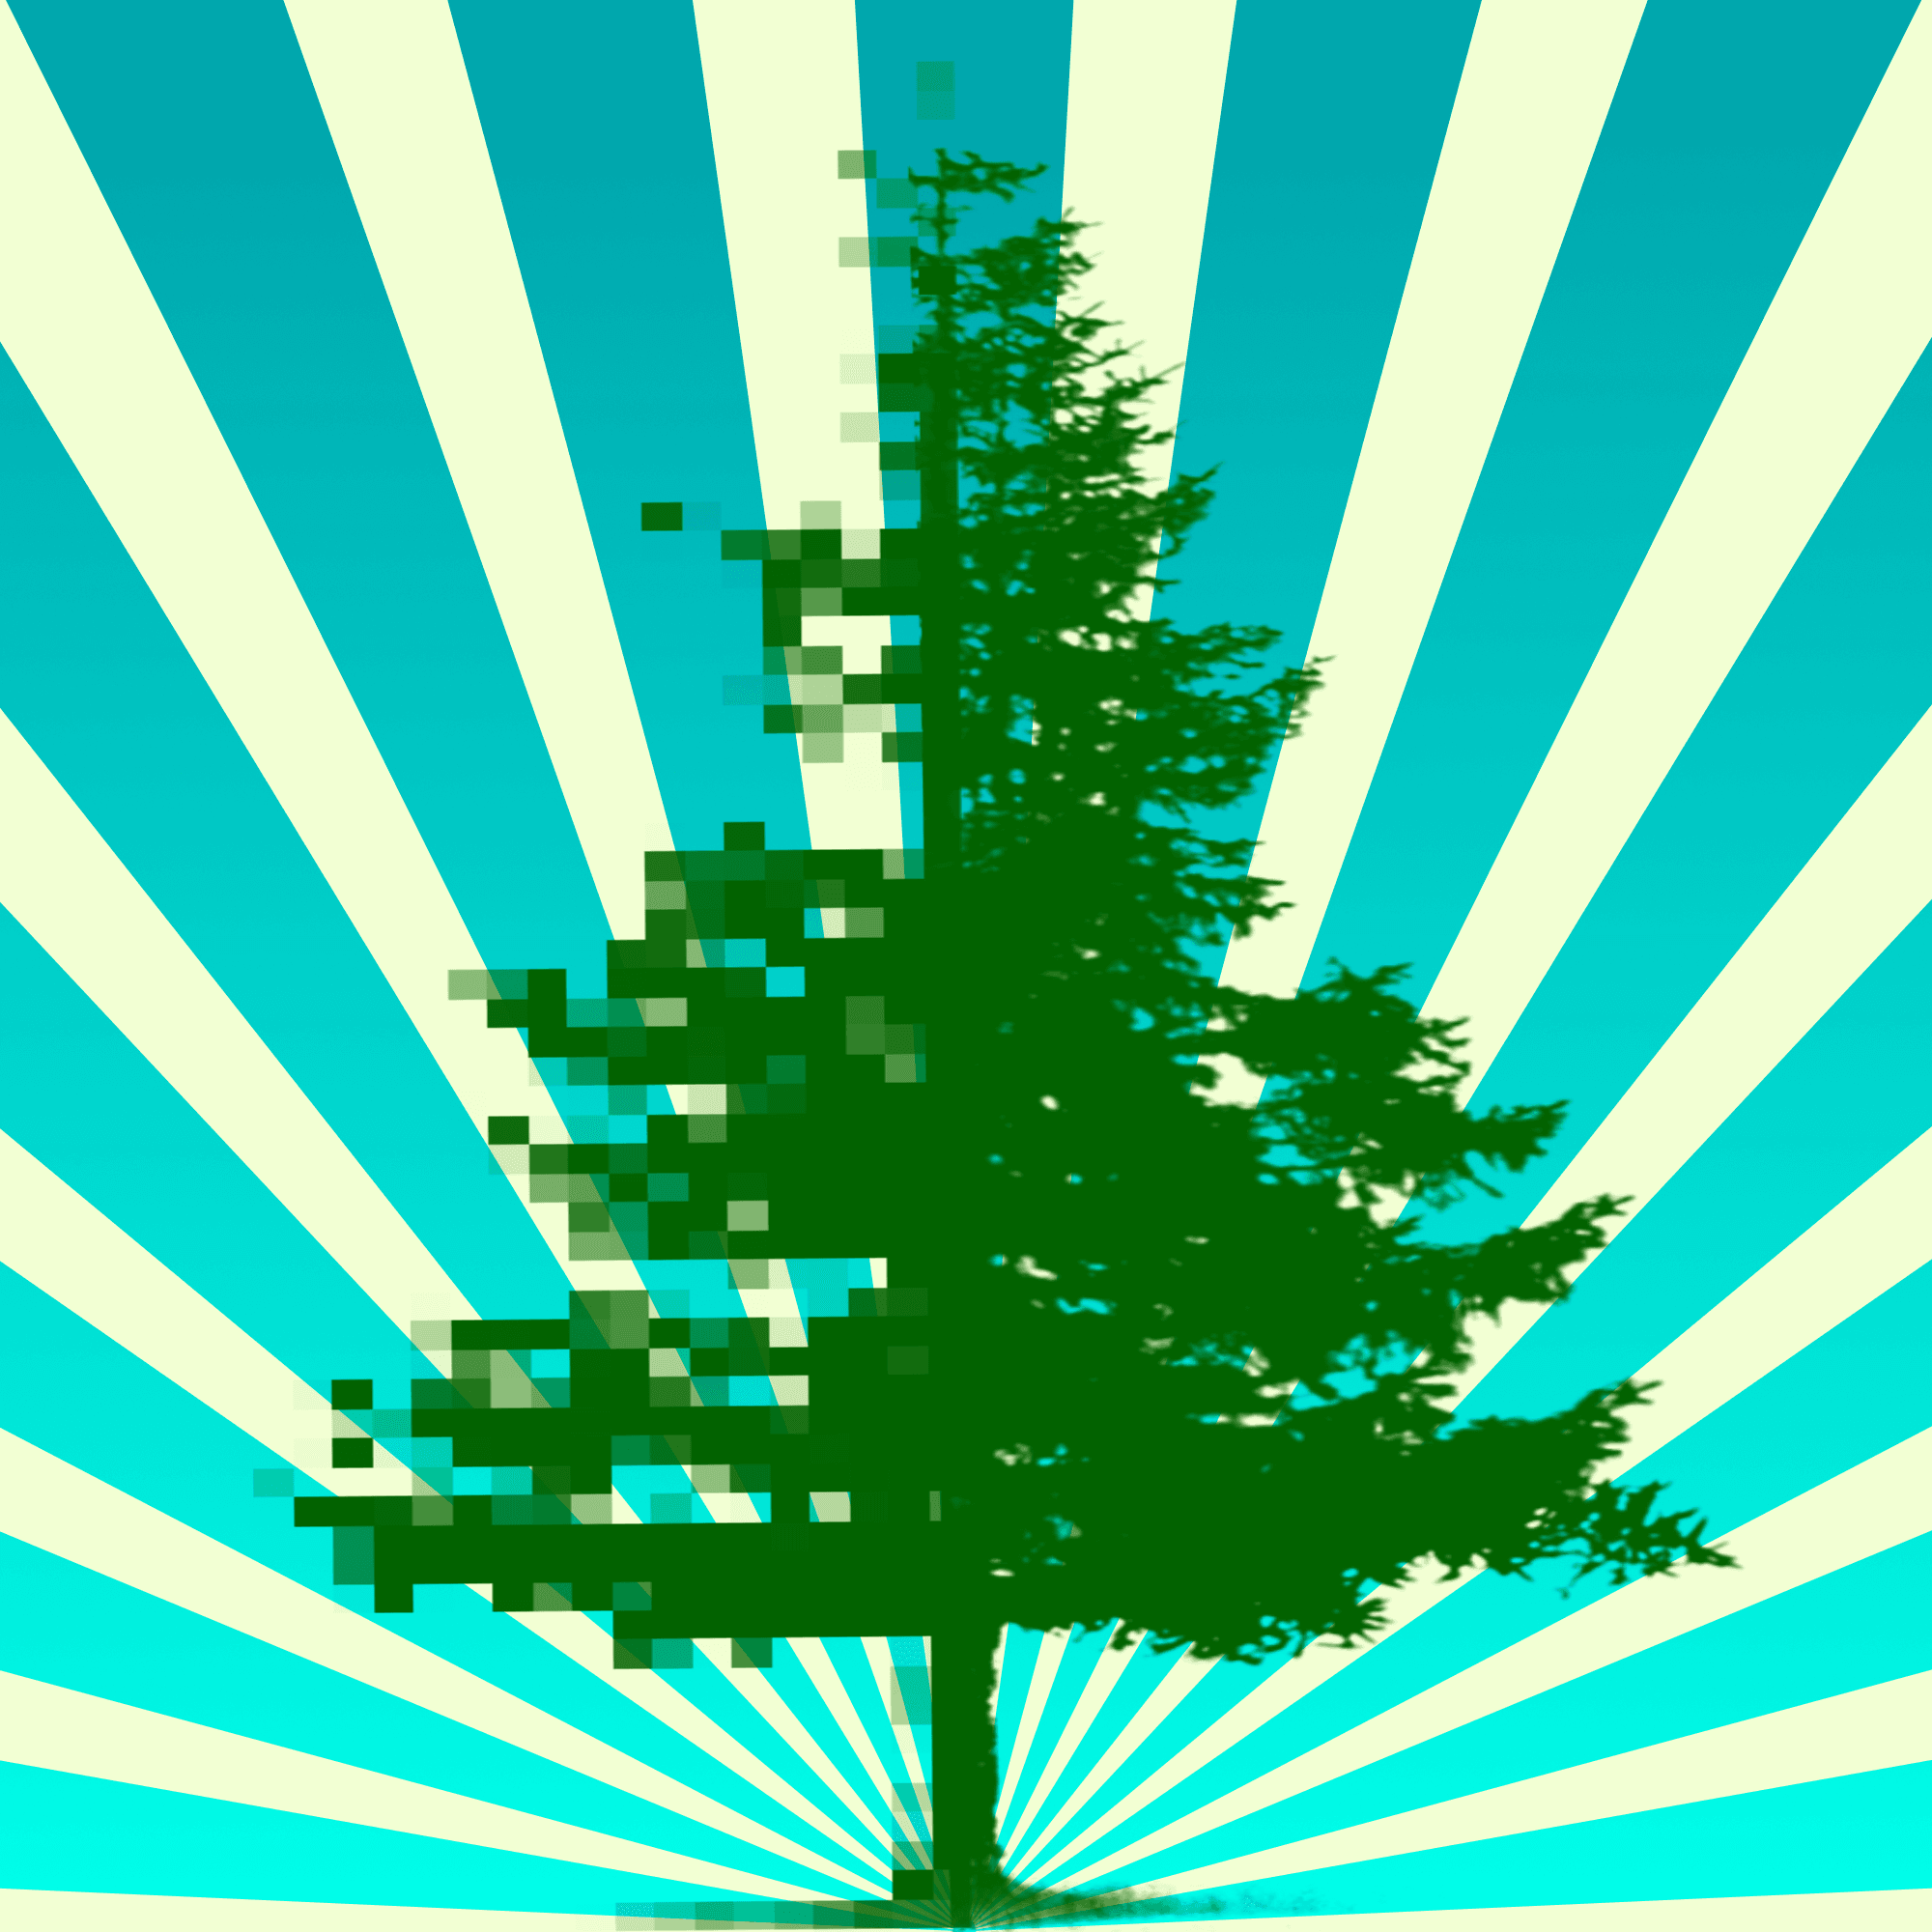 TreeHugger #2 🌲 Tree 2 of 21 Trees